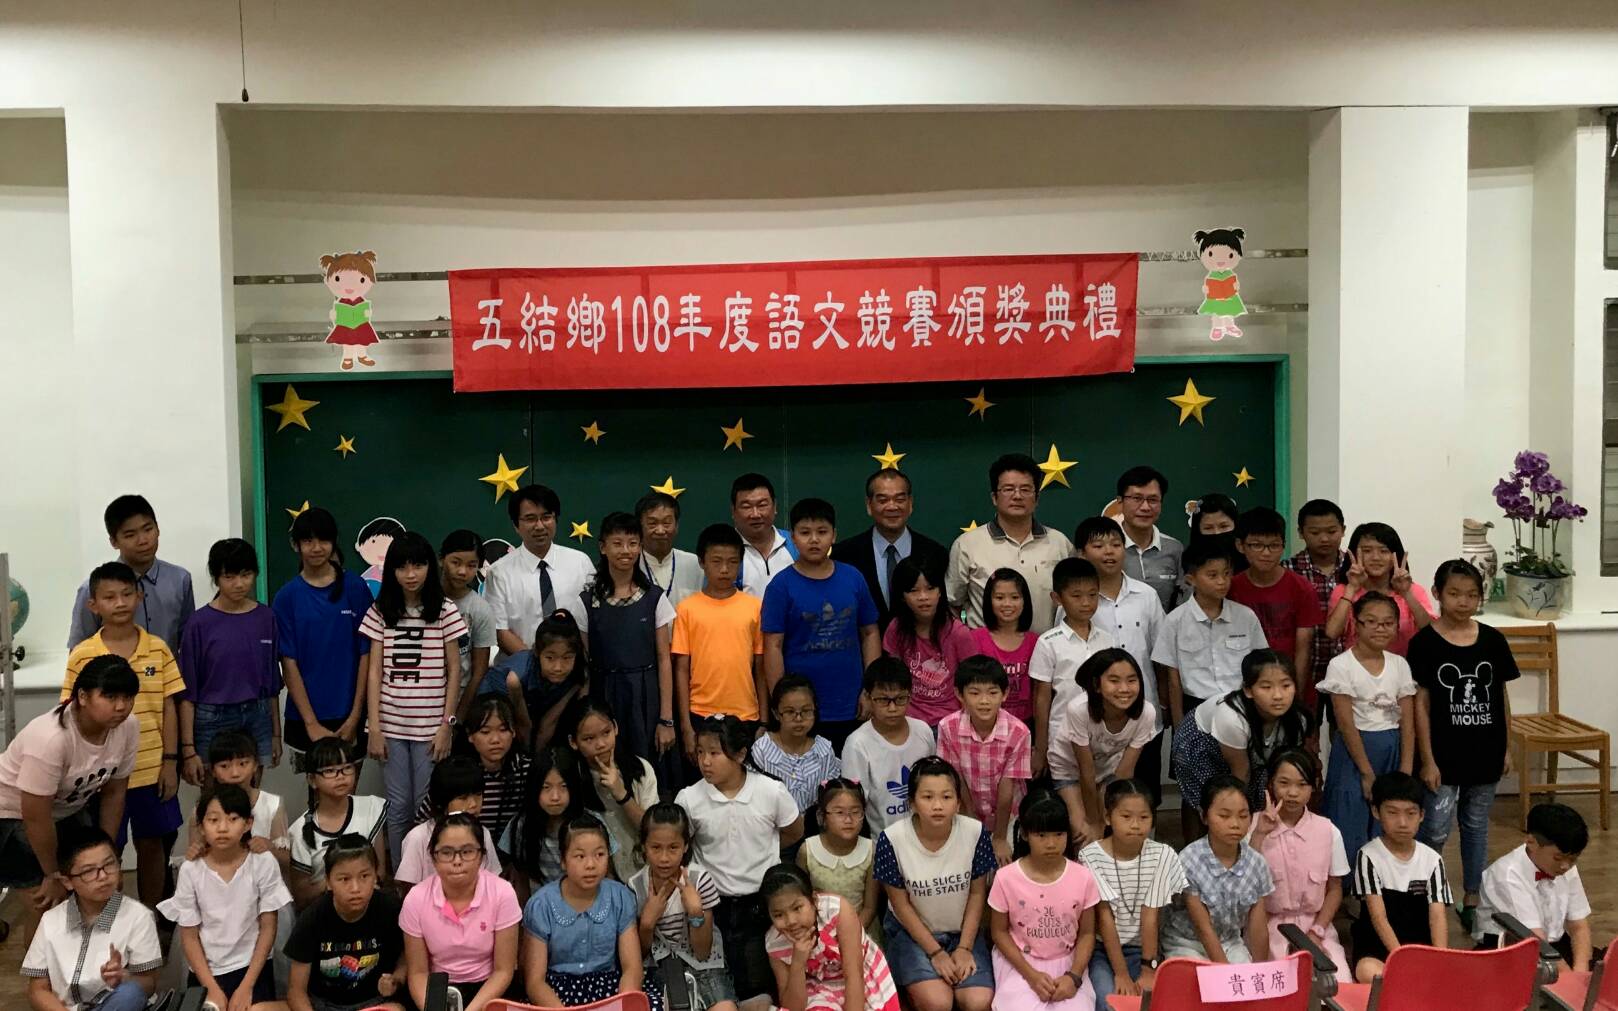 五結鄉108年度國小語文競賽成績揭曉 學進國小贏得最多第一名